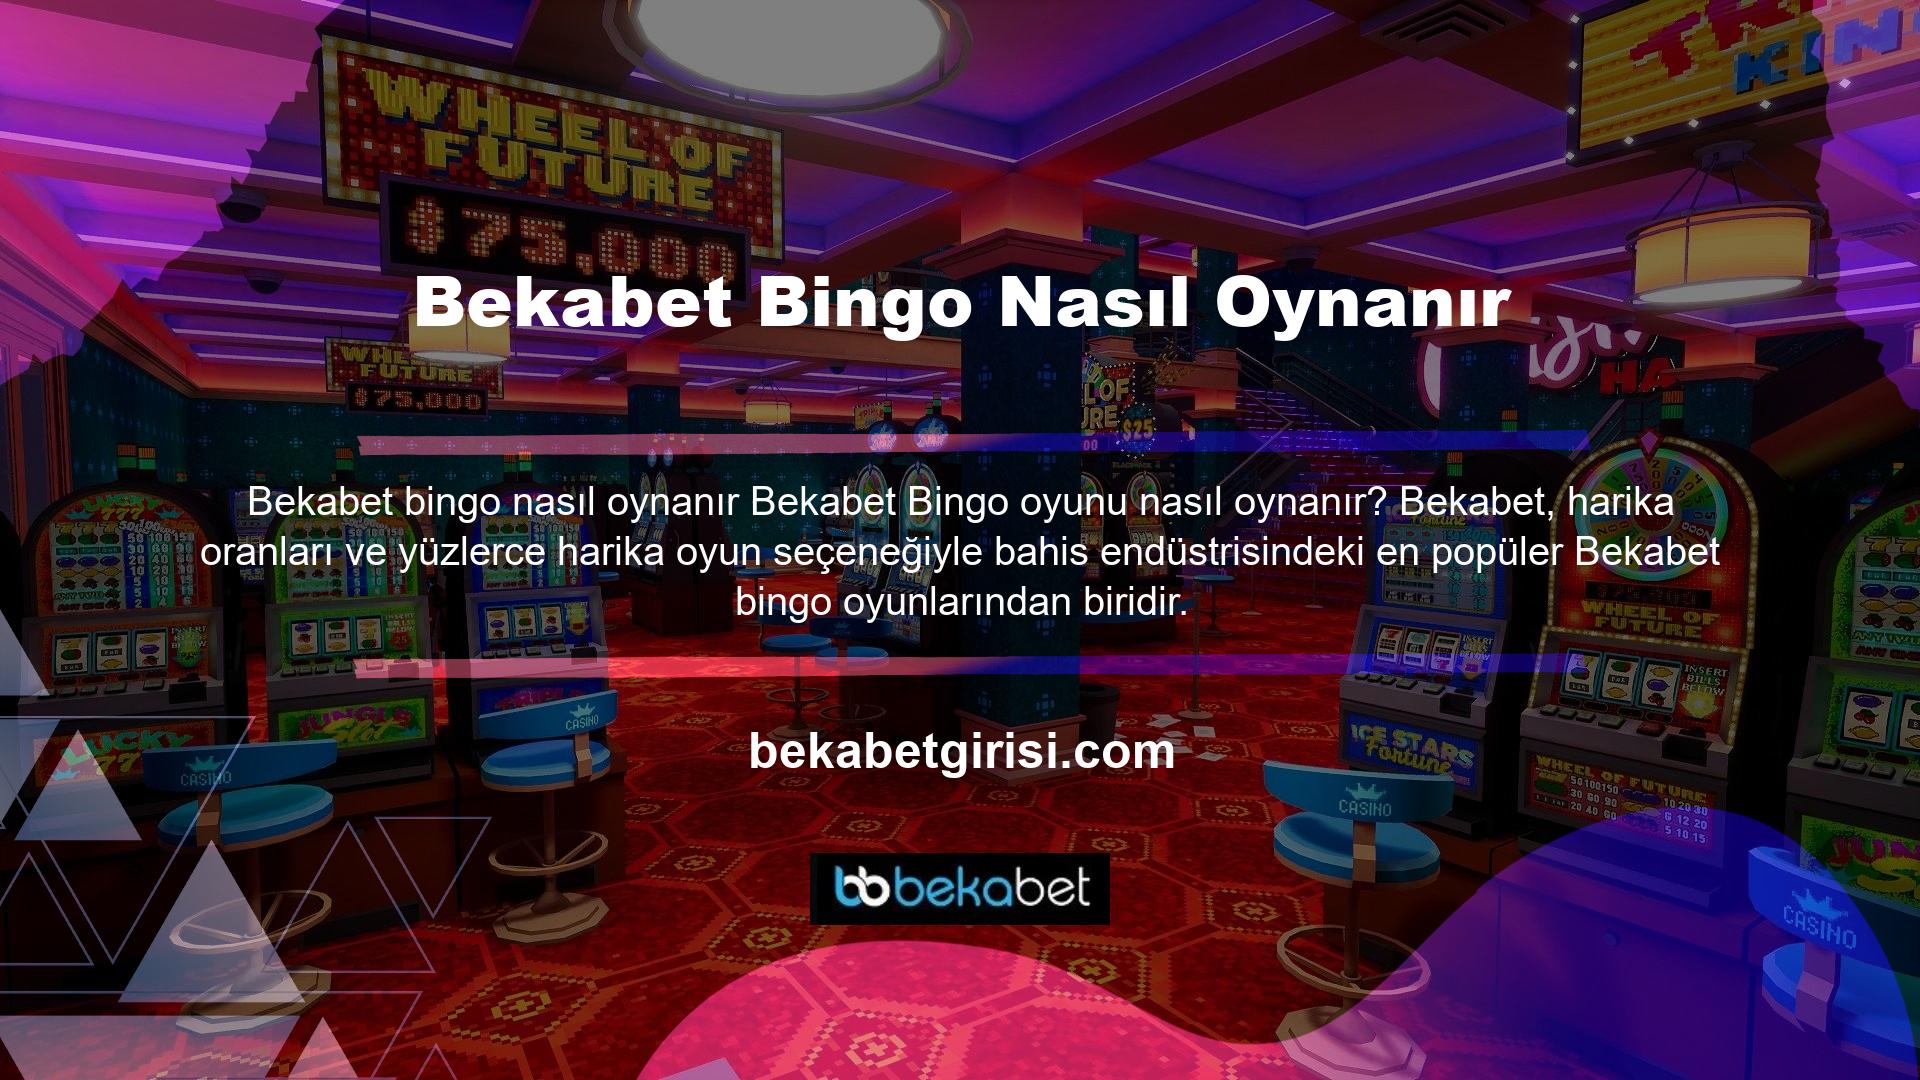 Bingo, casino oyunları kategorisinde en çok oynanan oyunlardan biri olup aynı zamanda diğer platformlara göre en çok oynanan oyundur